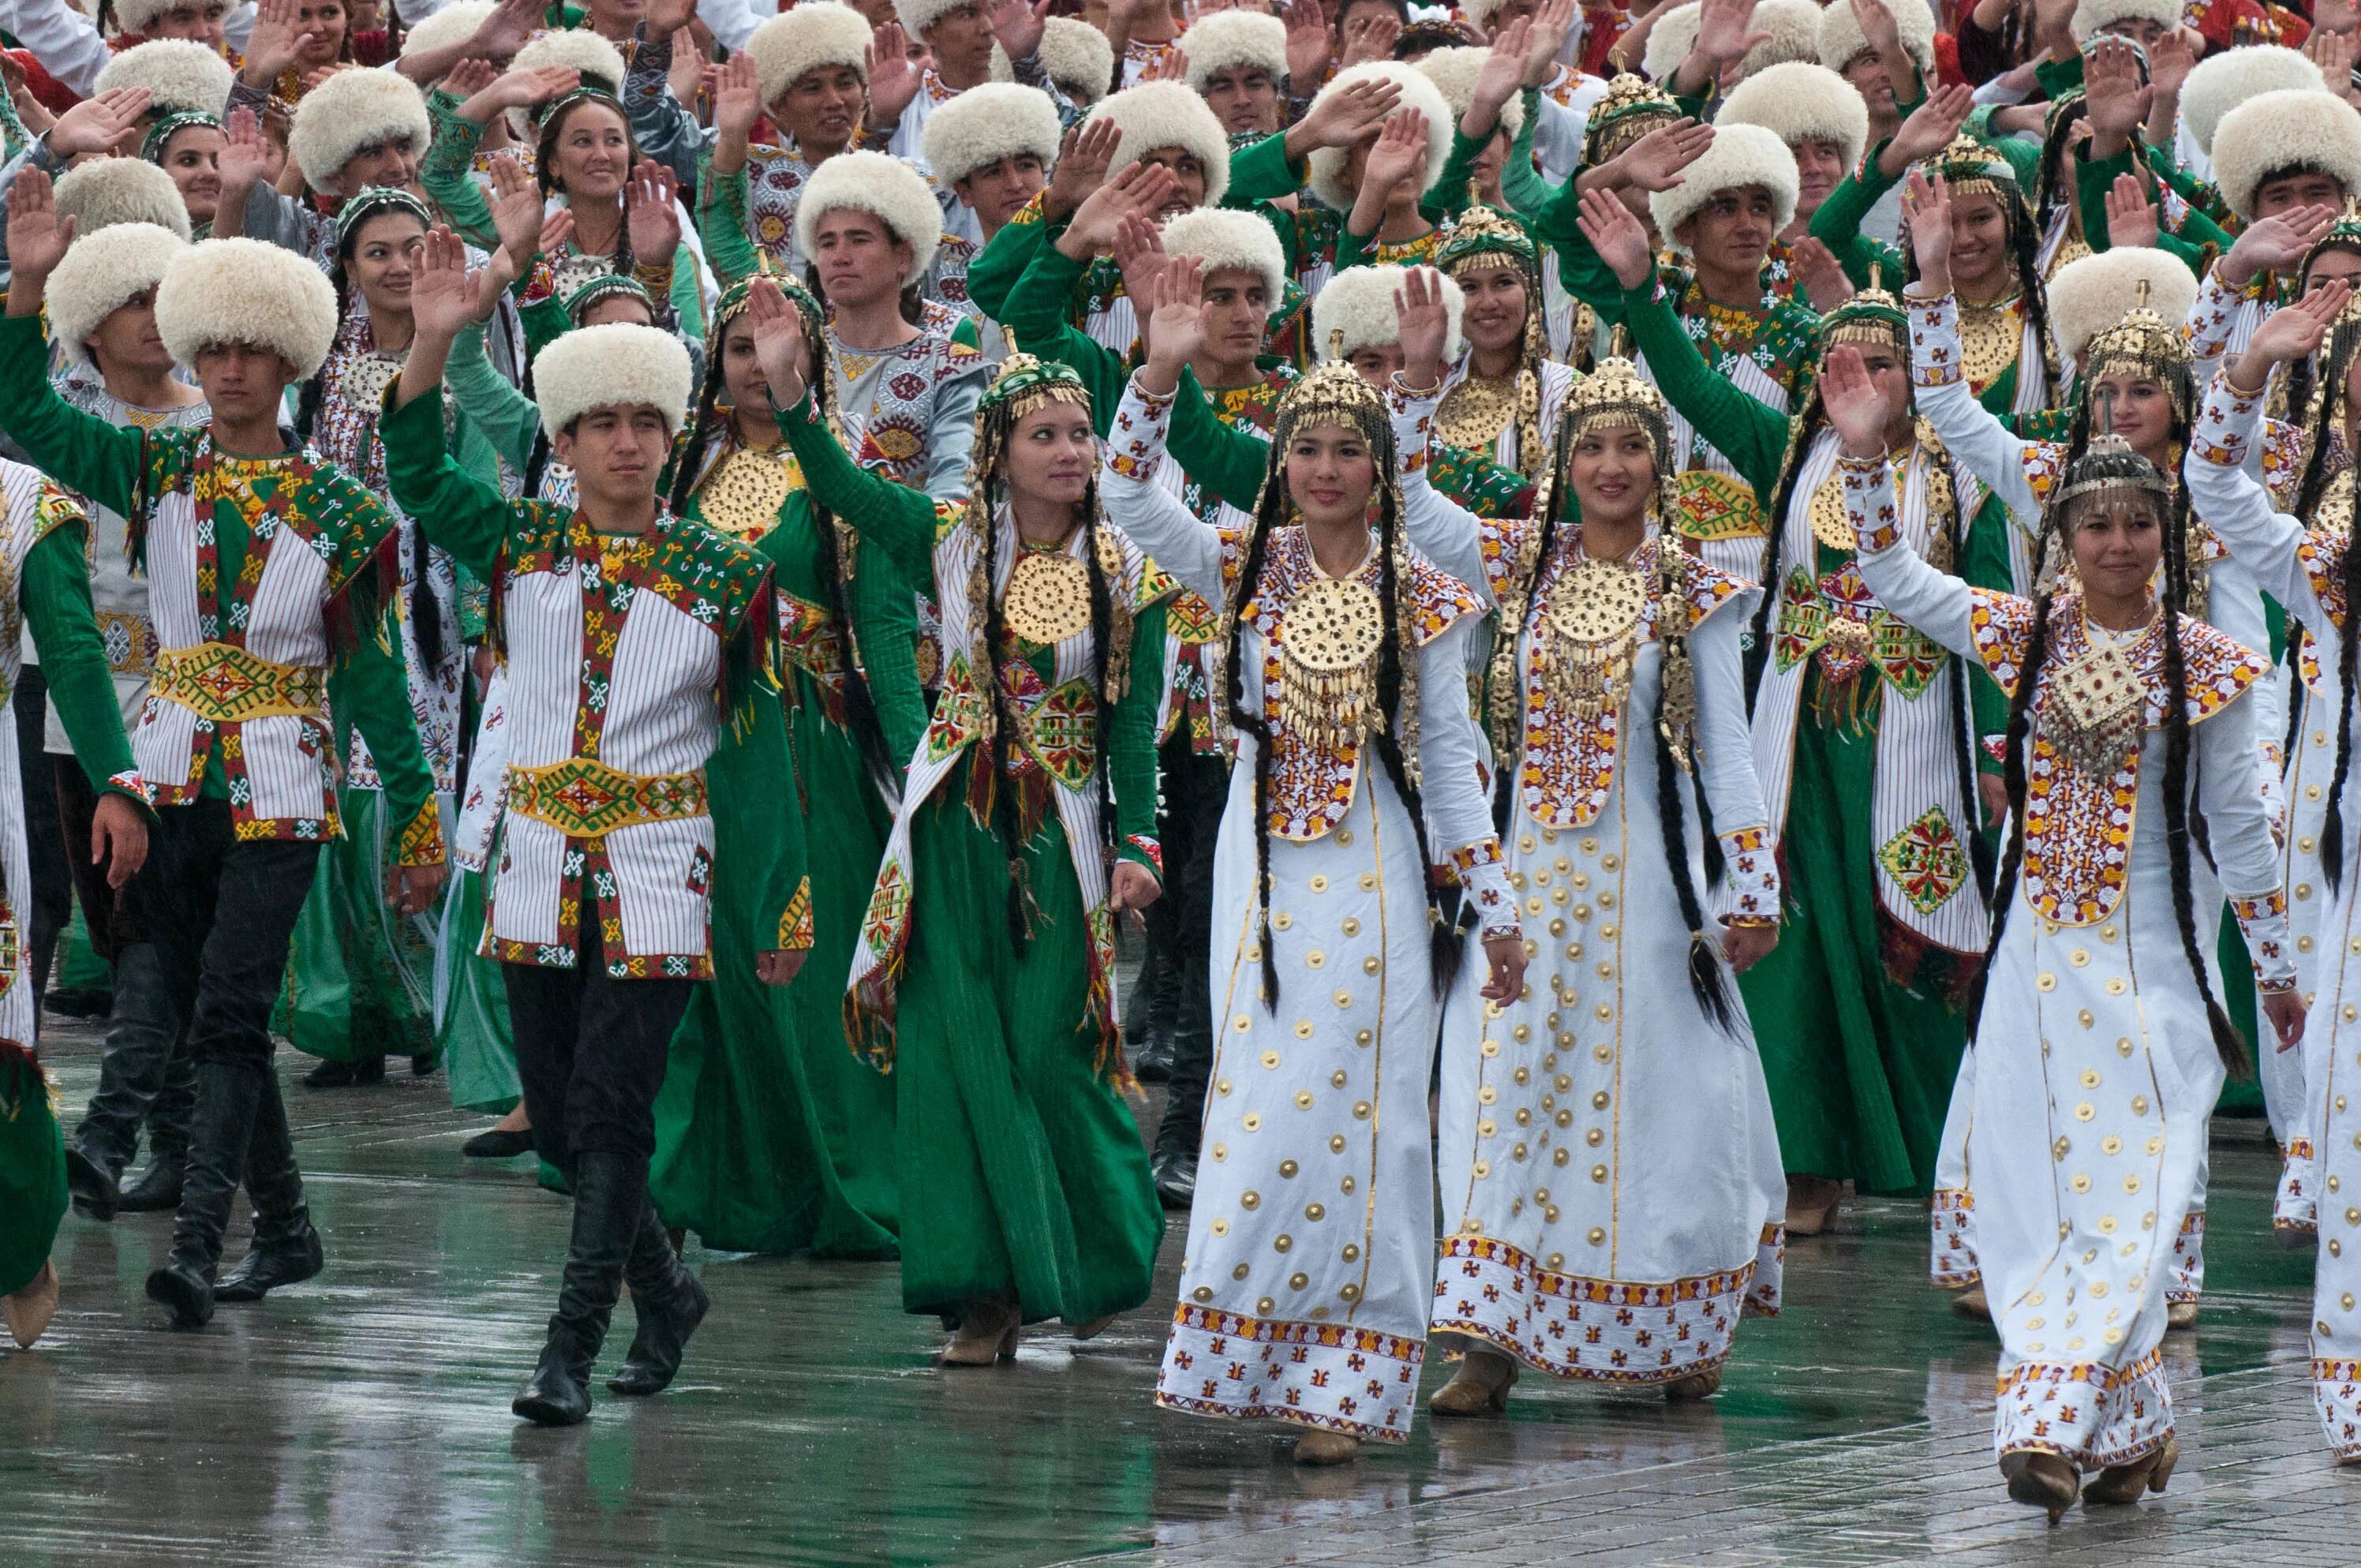 Туркмен число. Народ Туркмении Туркменистане. Национальный костюм туркменов. Туркменистан Туркмен туркменка нация. Туркменистанская Национальная одежда.